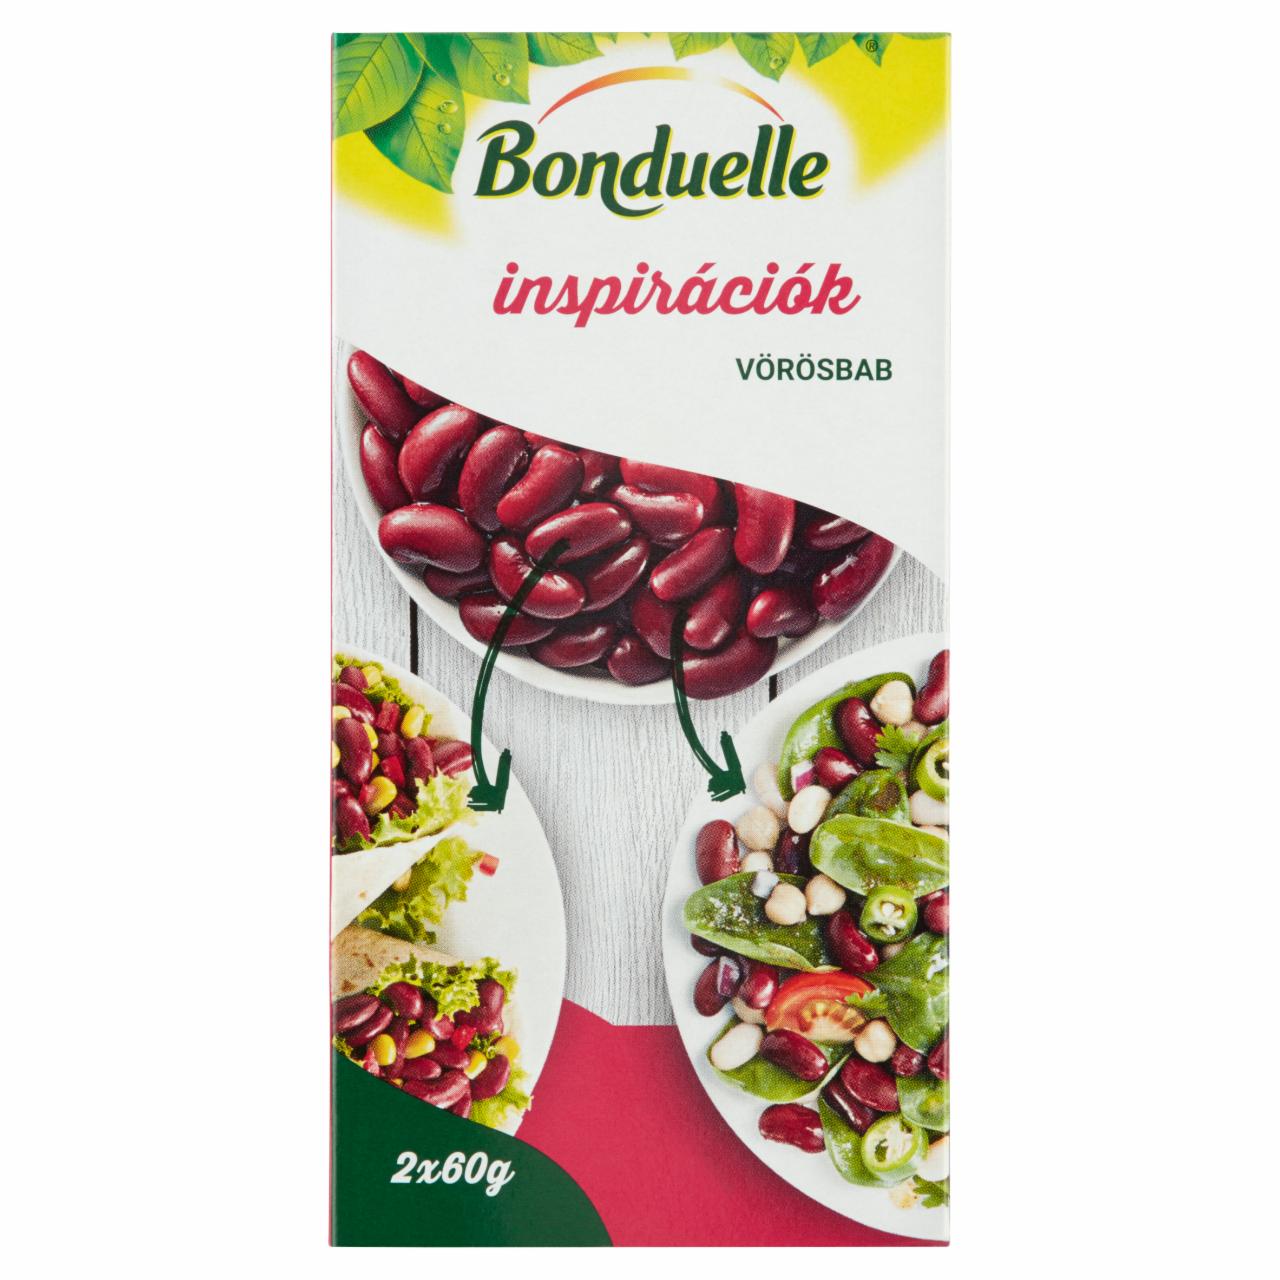 Képek - Bonduelle Inspirációk vörösbab 2 x 80 g